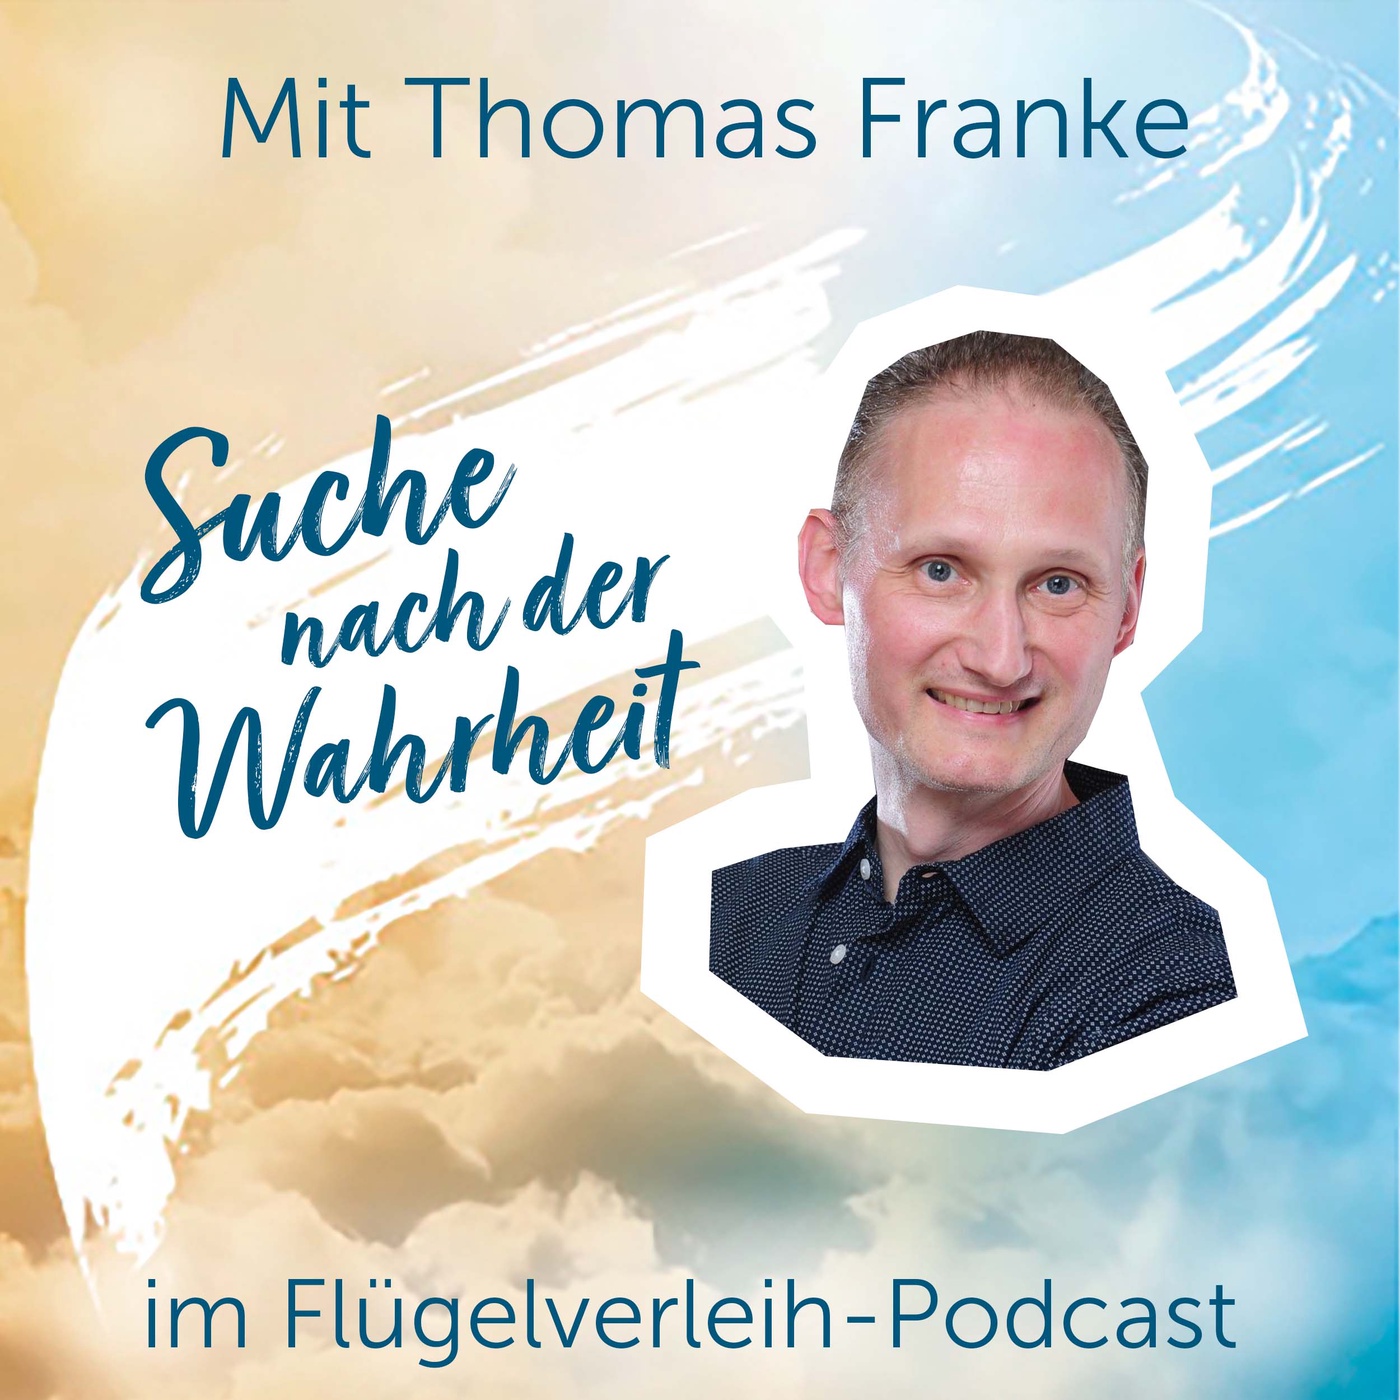 Suche nach der Wahrheit – mit Thomas Franke